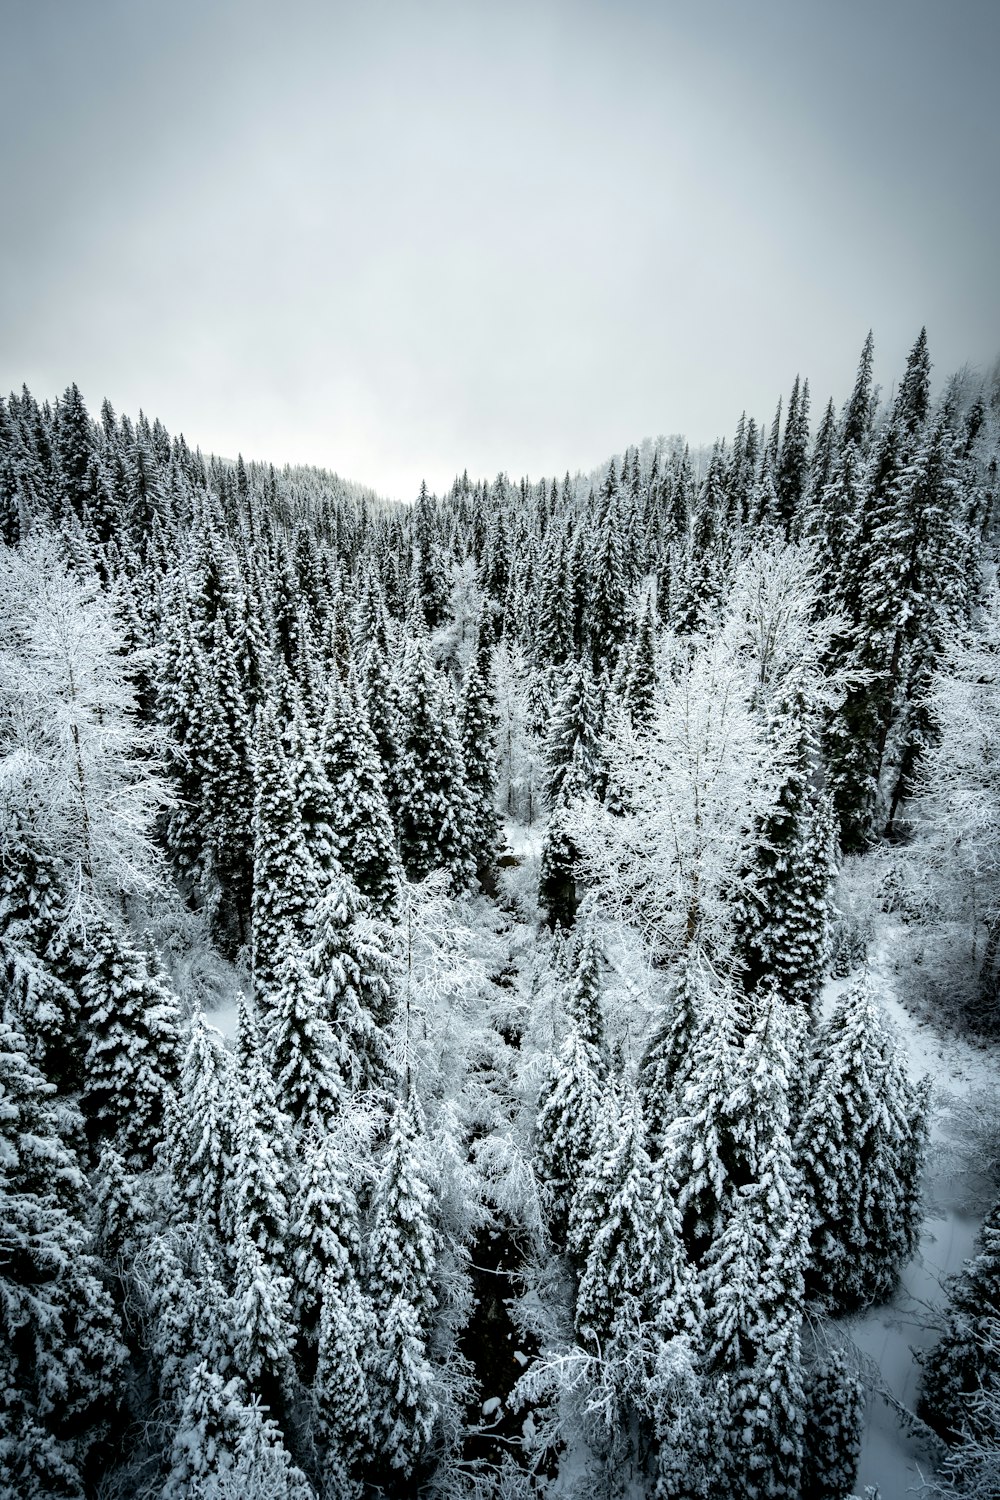 Photo en niveaux de gris de pins recouverts de neige